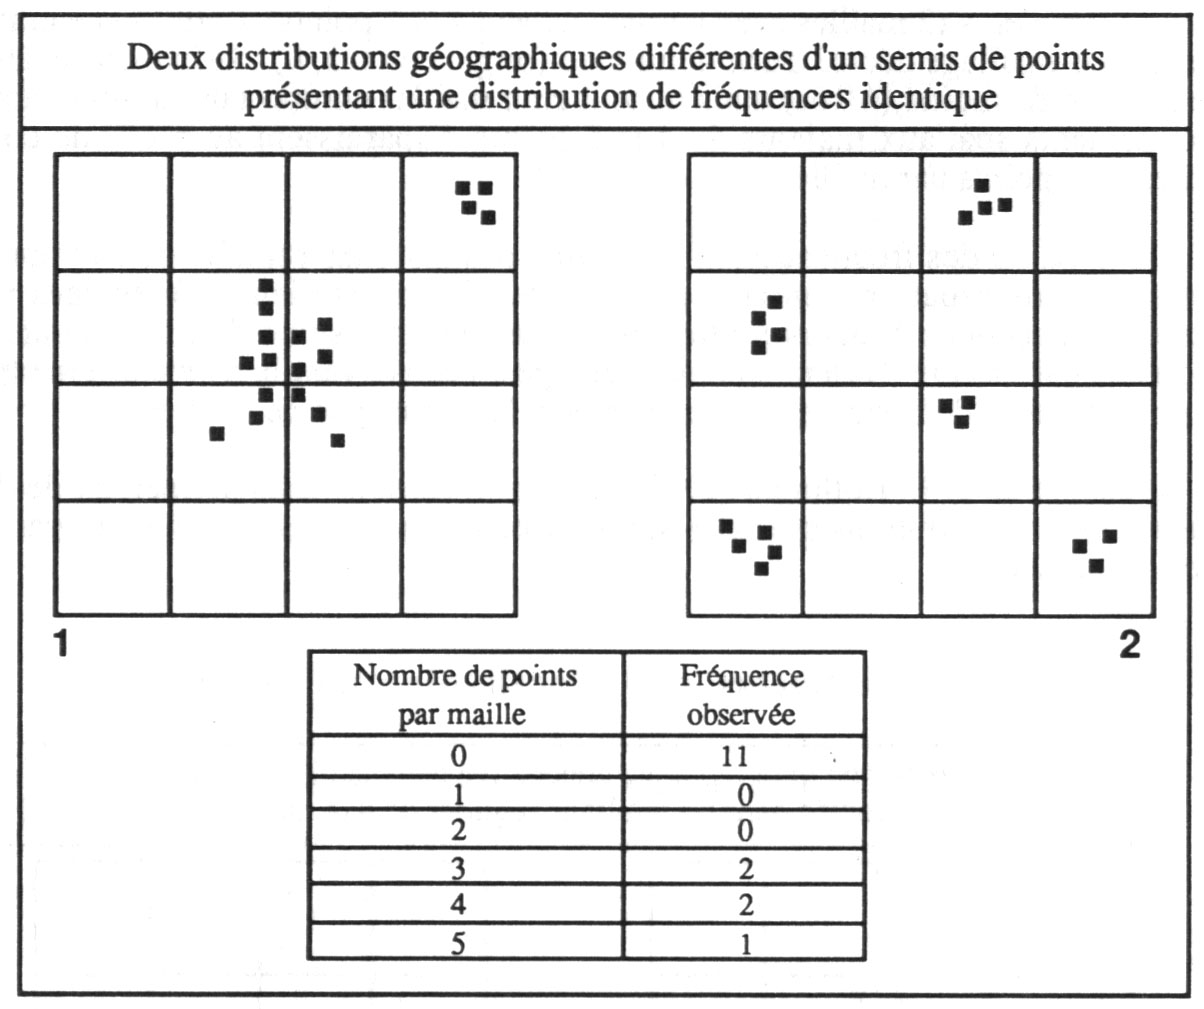 Figure II.8. Distribution géographique et distribution statistique